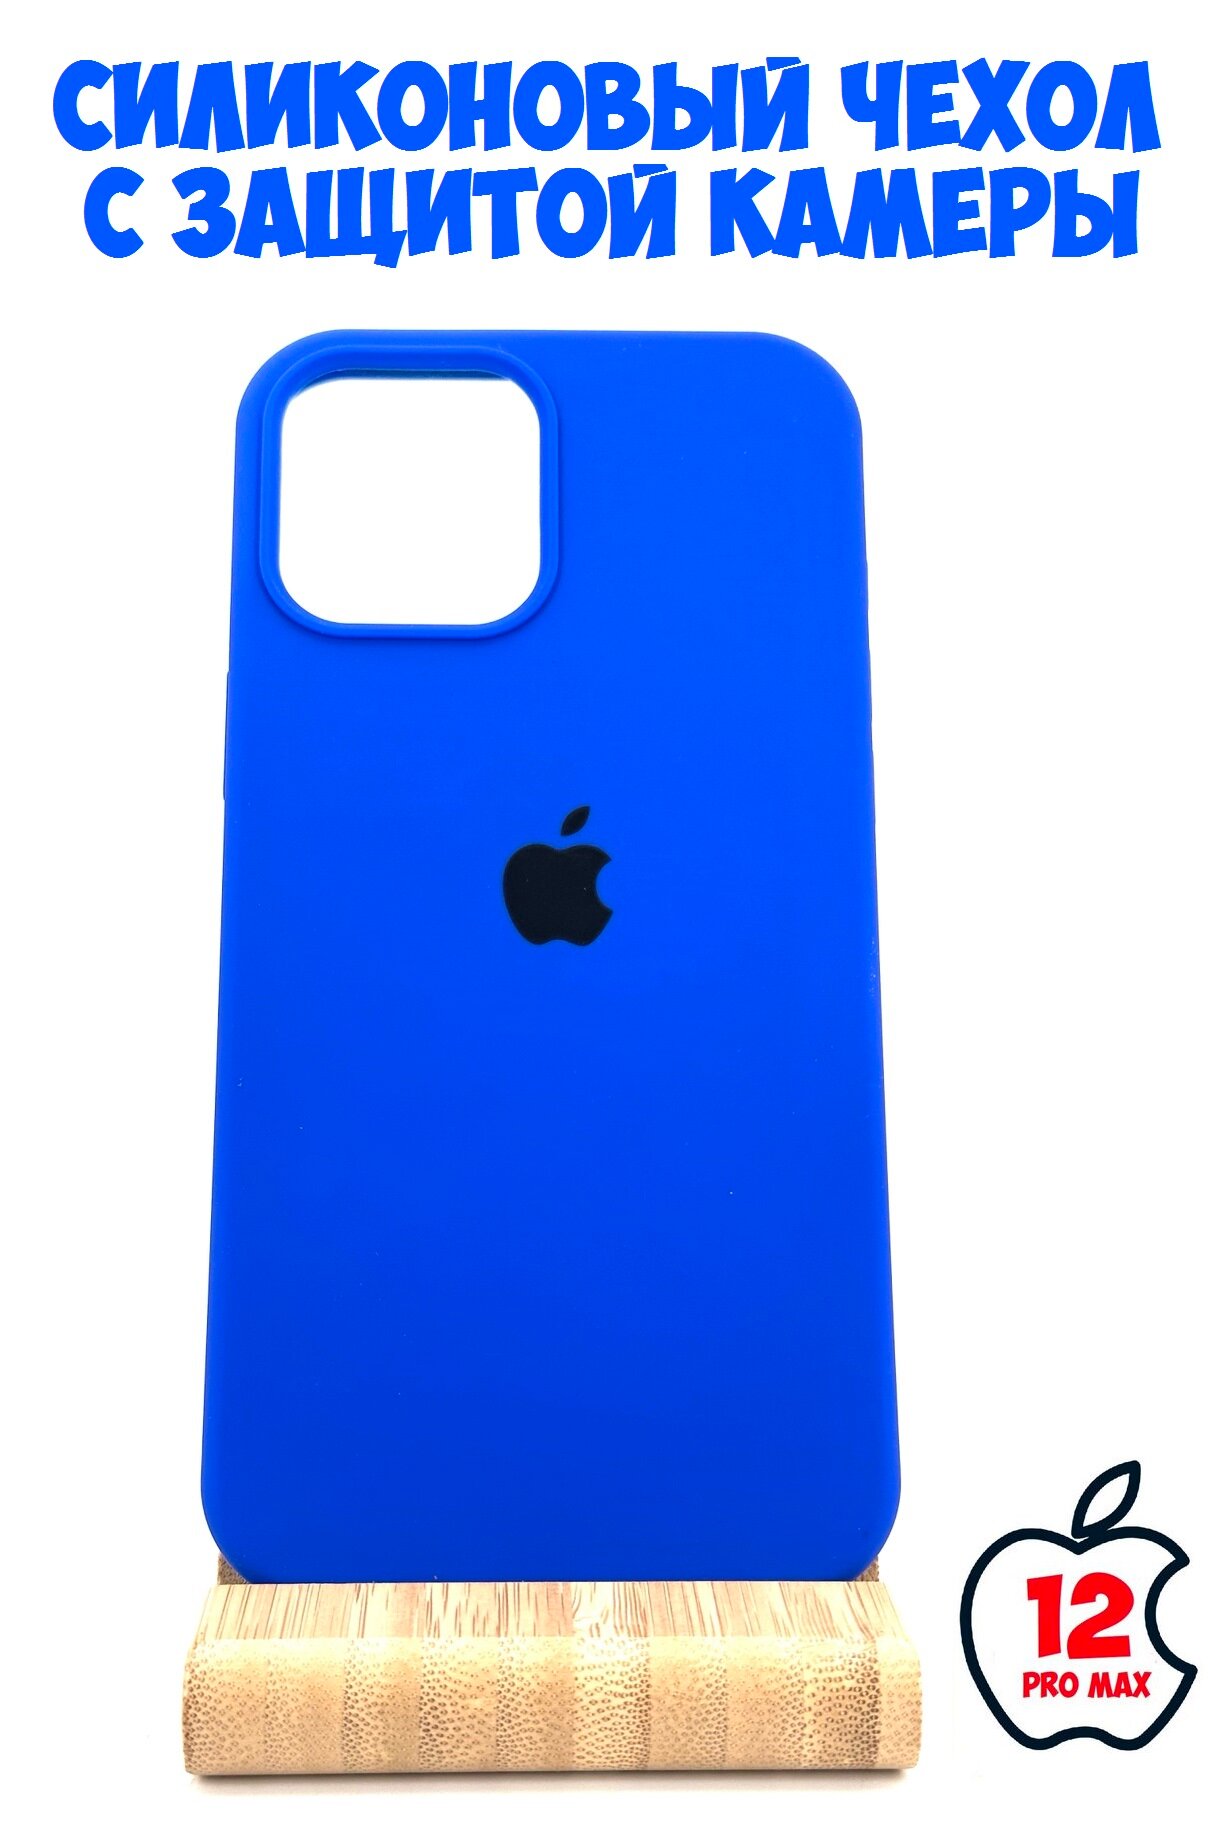 Силиконовый чехол для iPhone 12 Pro Max с защитой камеры ярко-синий